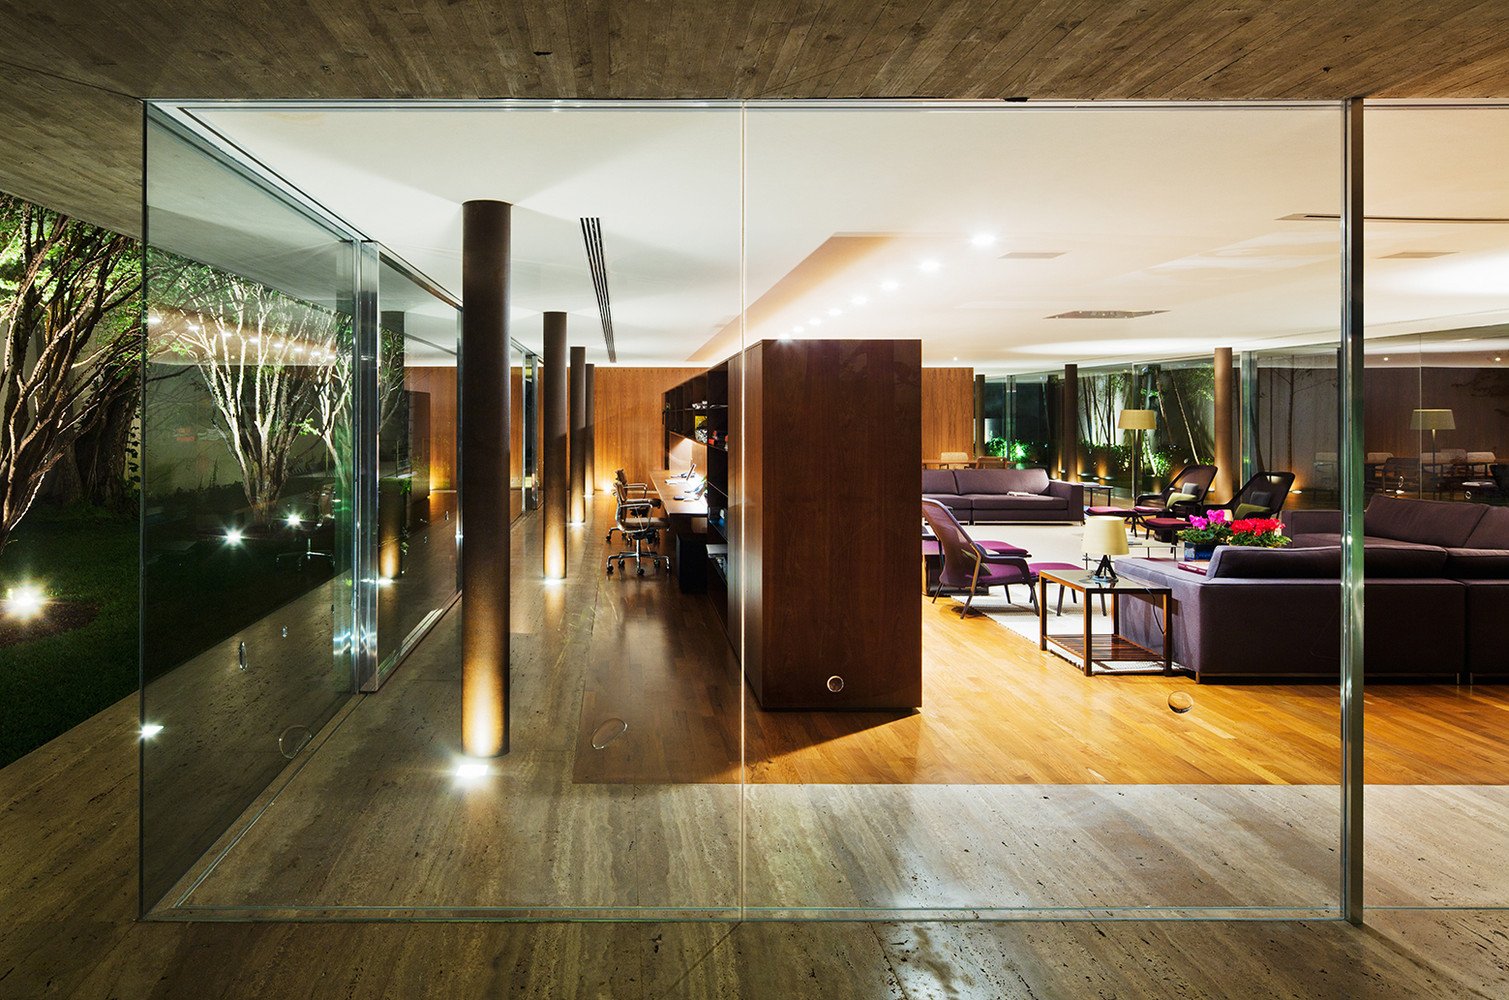 Contemporary house São Paulo - Toblerone House : Studio MK27 - exterior living room view`